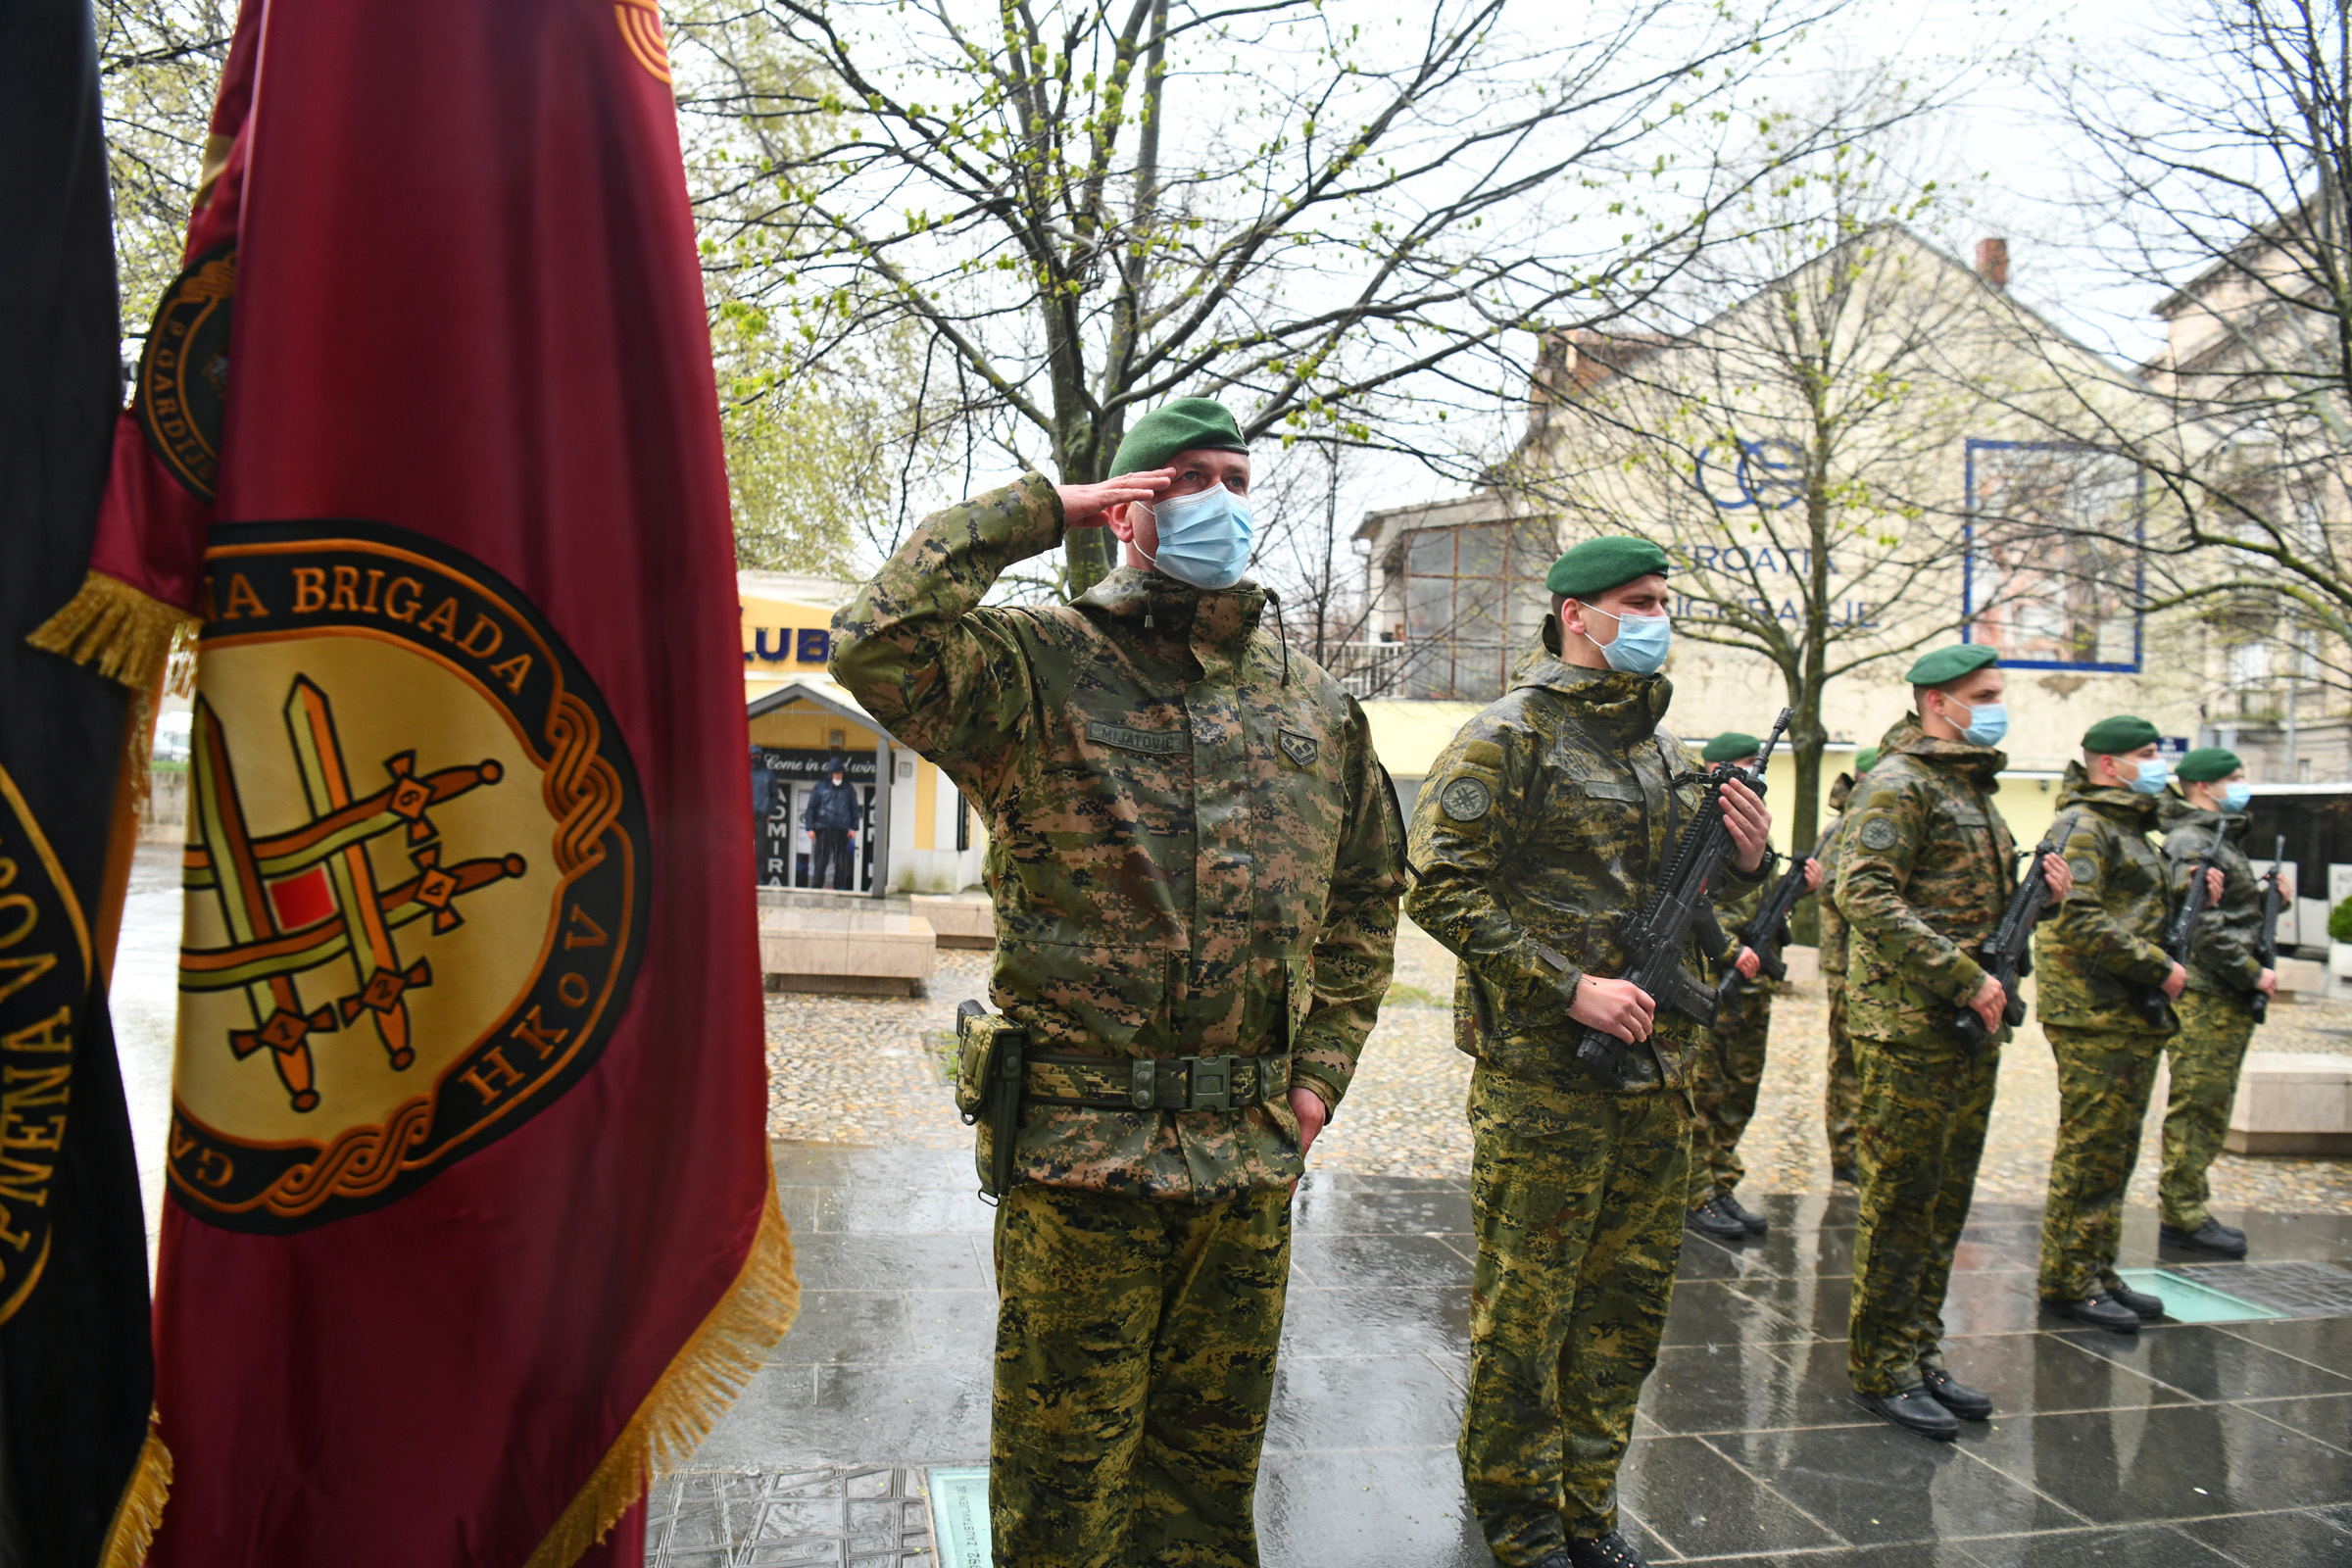 Uz pripadnike Gardijske mehanizirane brigade, ministar Banožić pohvalio je i sve pripadnike Hrvatske vojske za sve ono što čine u svojim misijama i zadaćama | Foto: MORH/T. Brandt